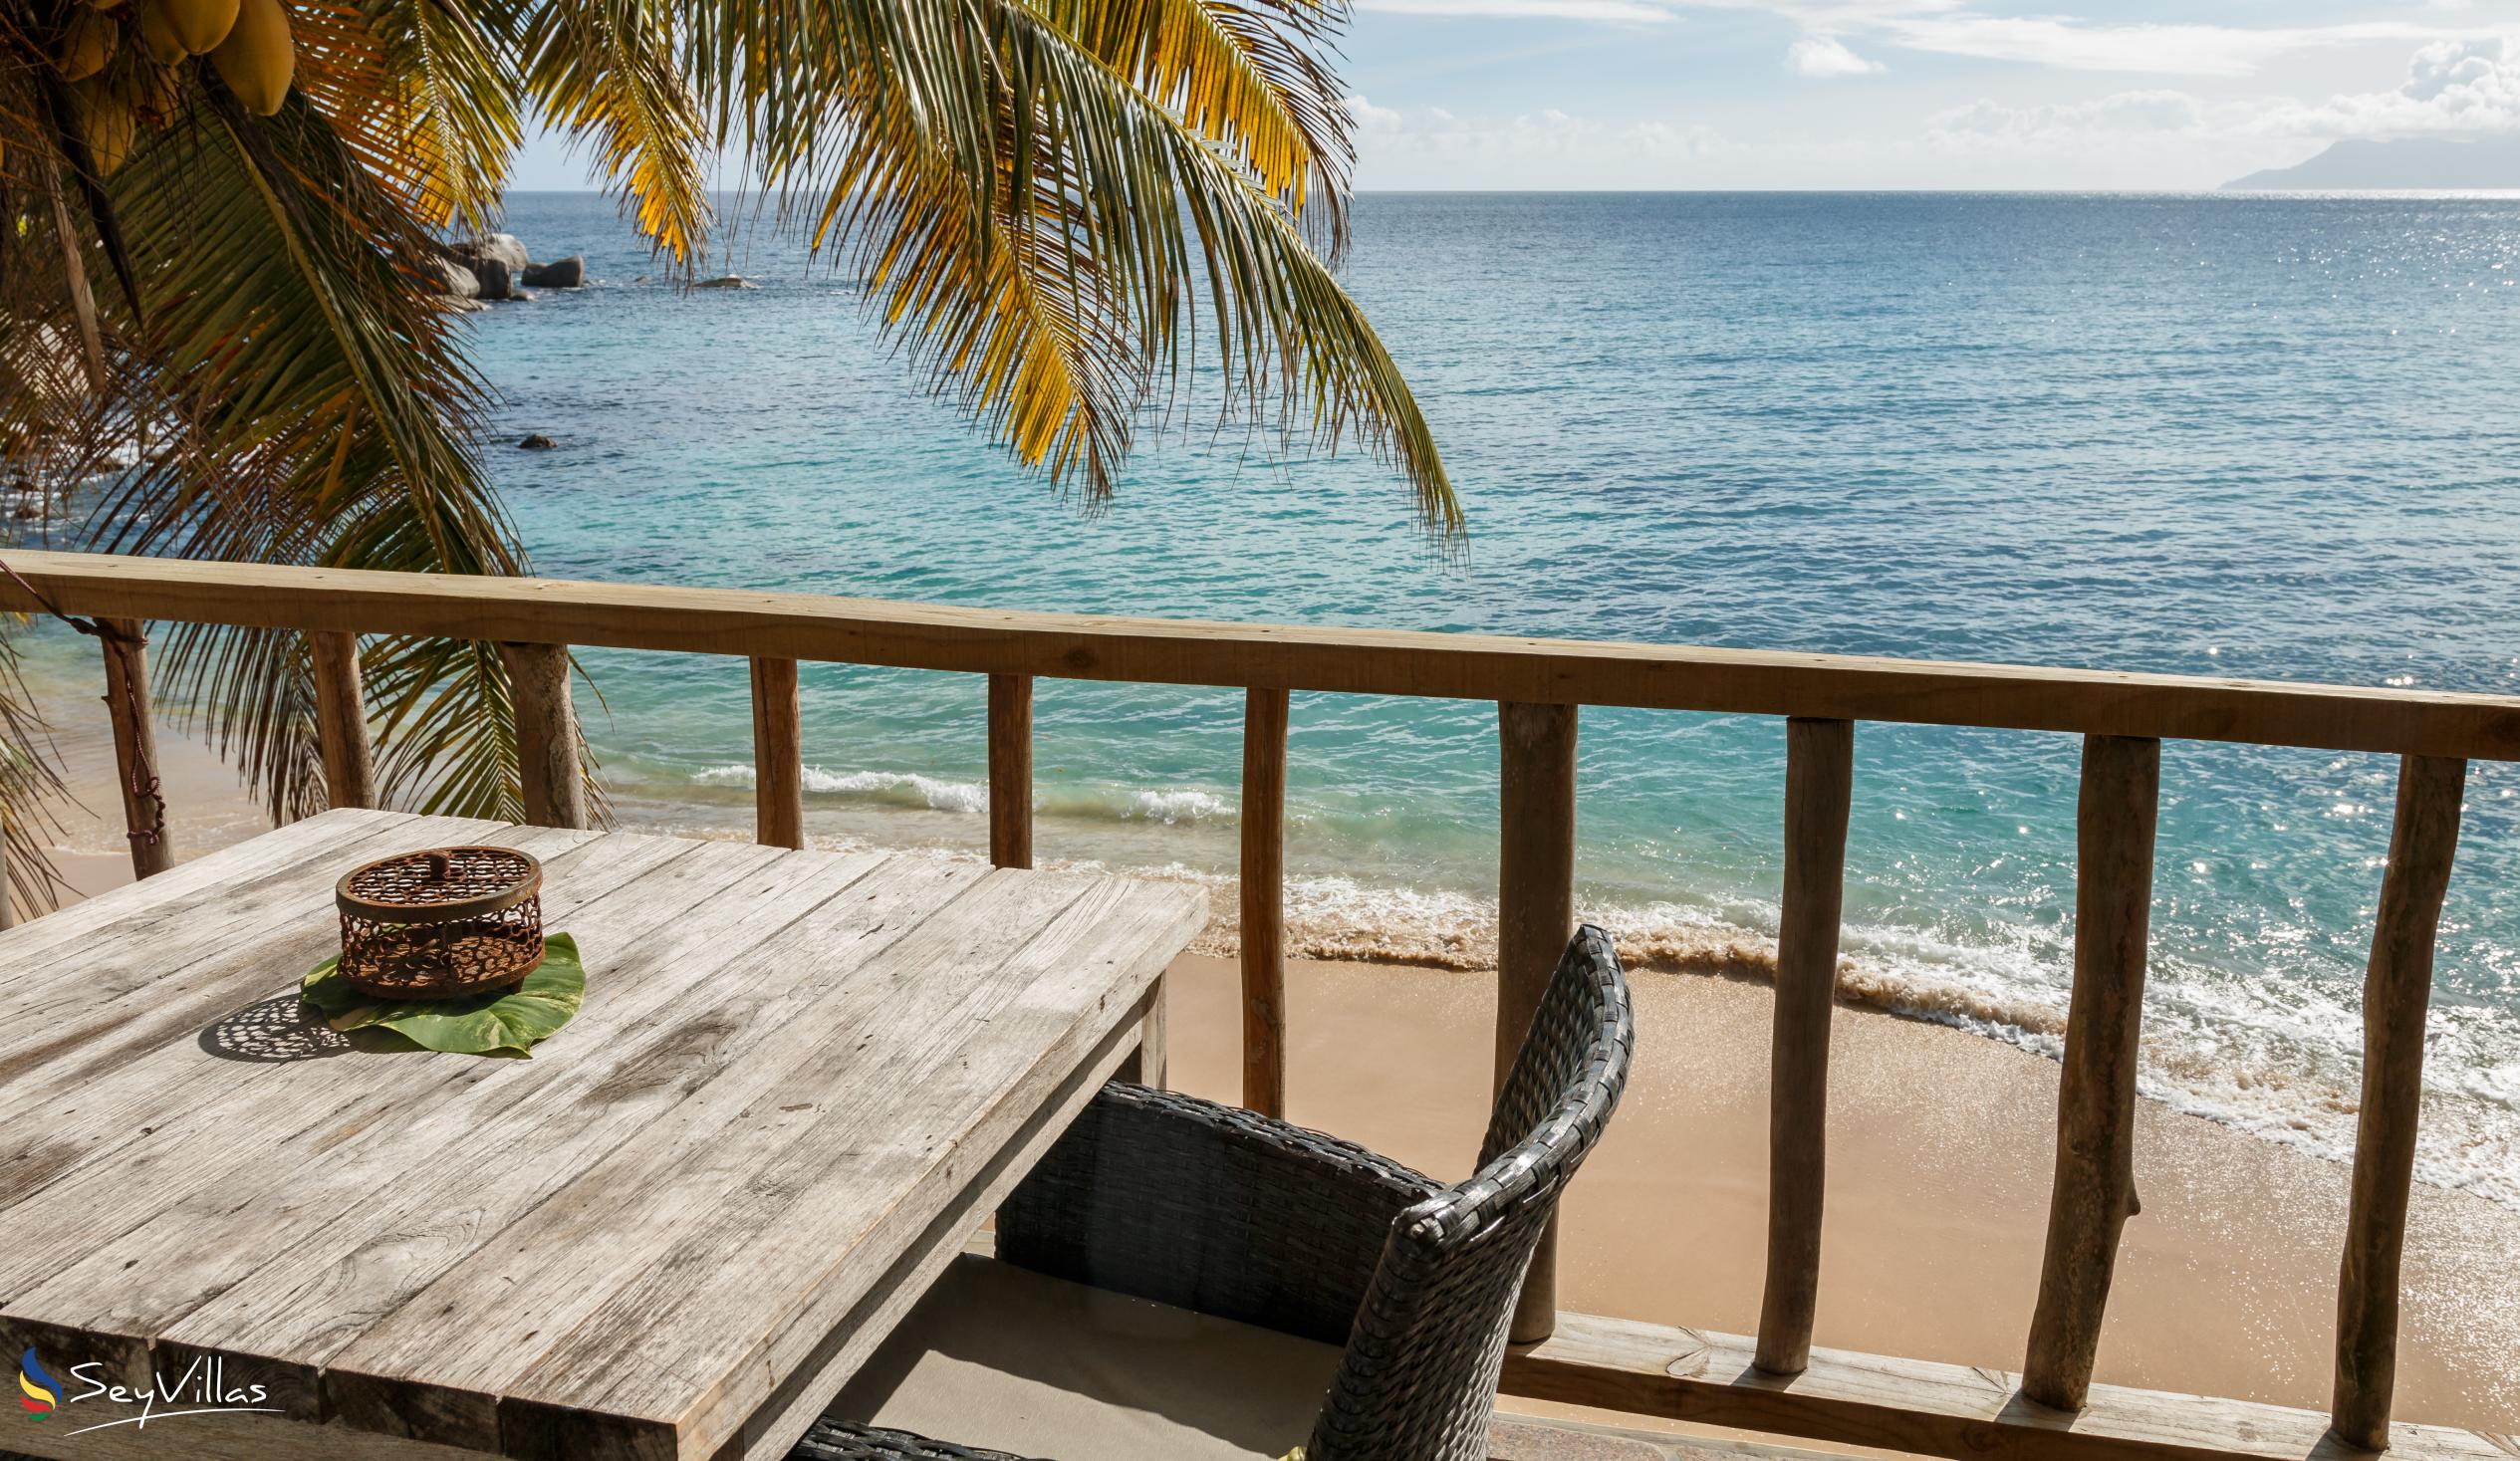 Foto 46: Bliss Hotel - SEASIDE - Suite junior avec vue sur la mer - Mahé (Seychelles)